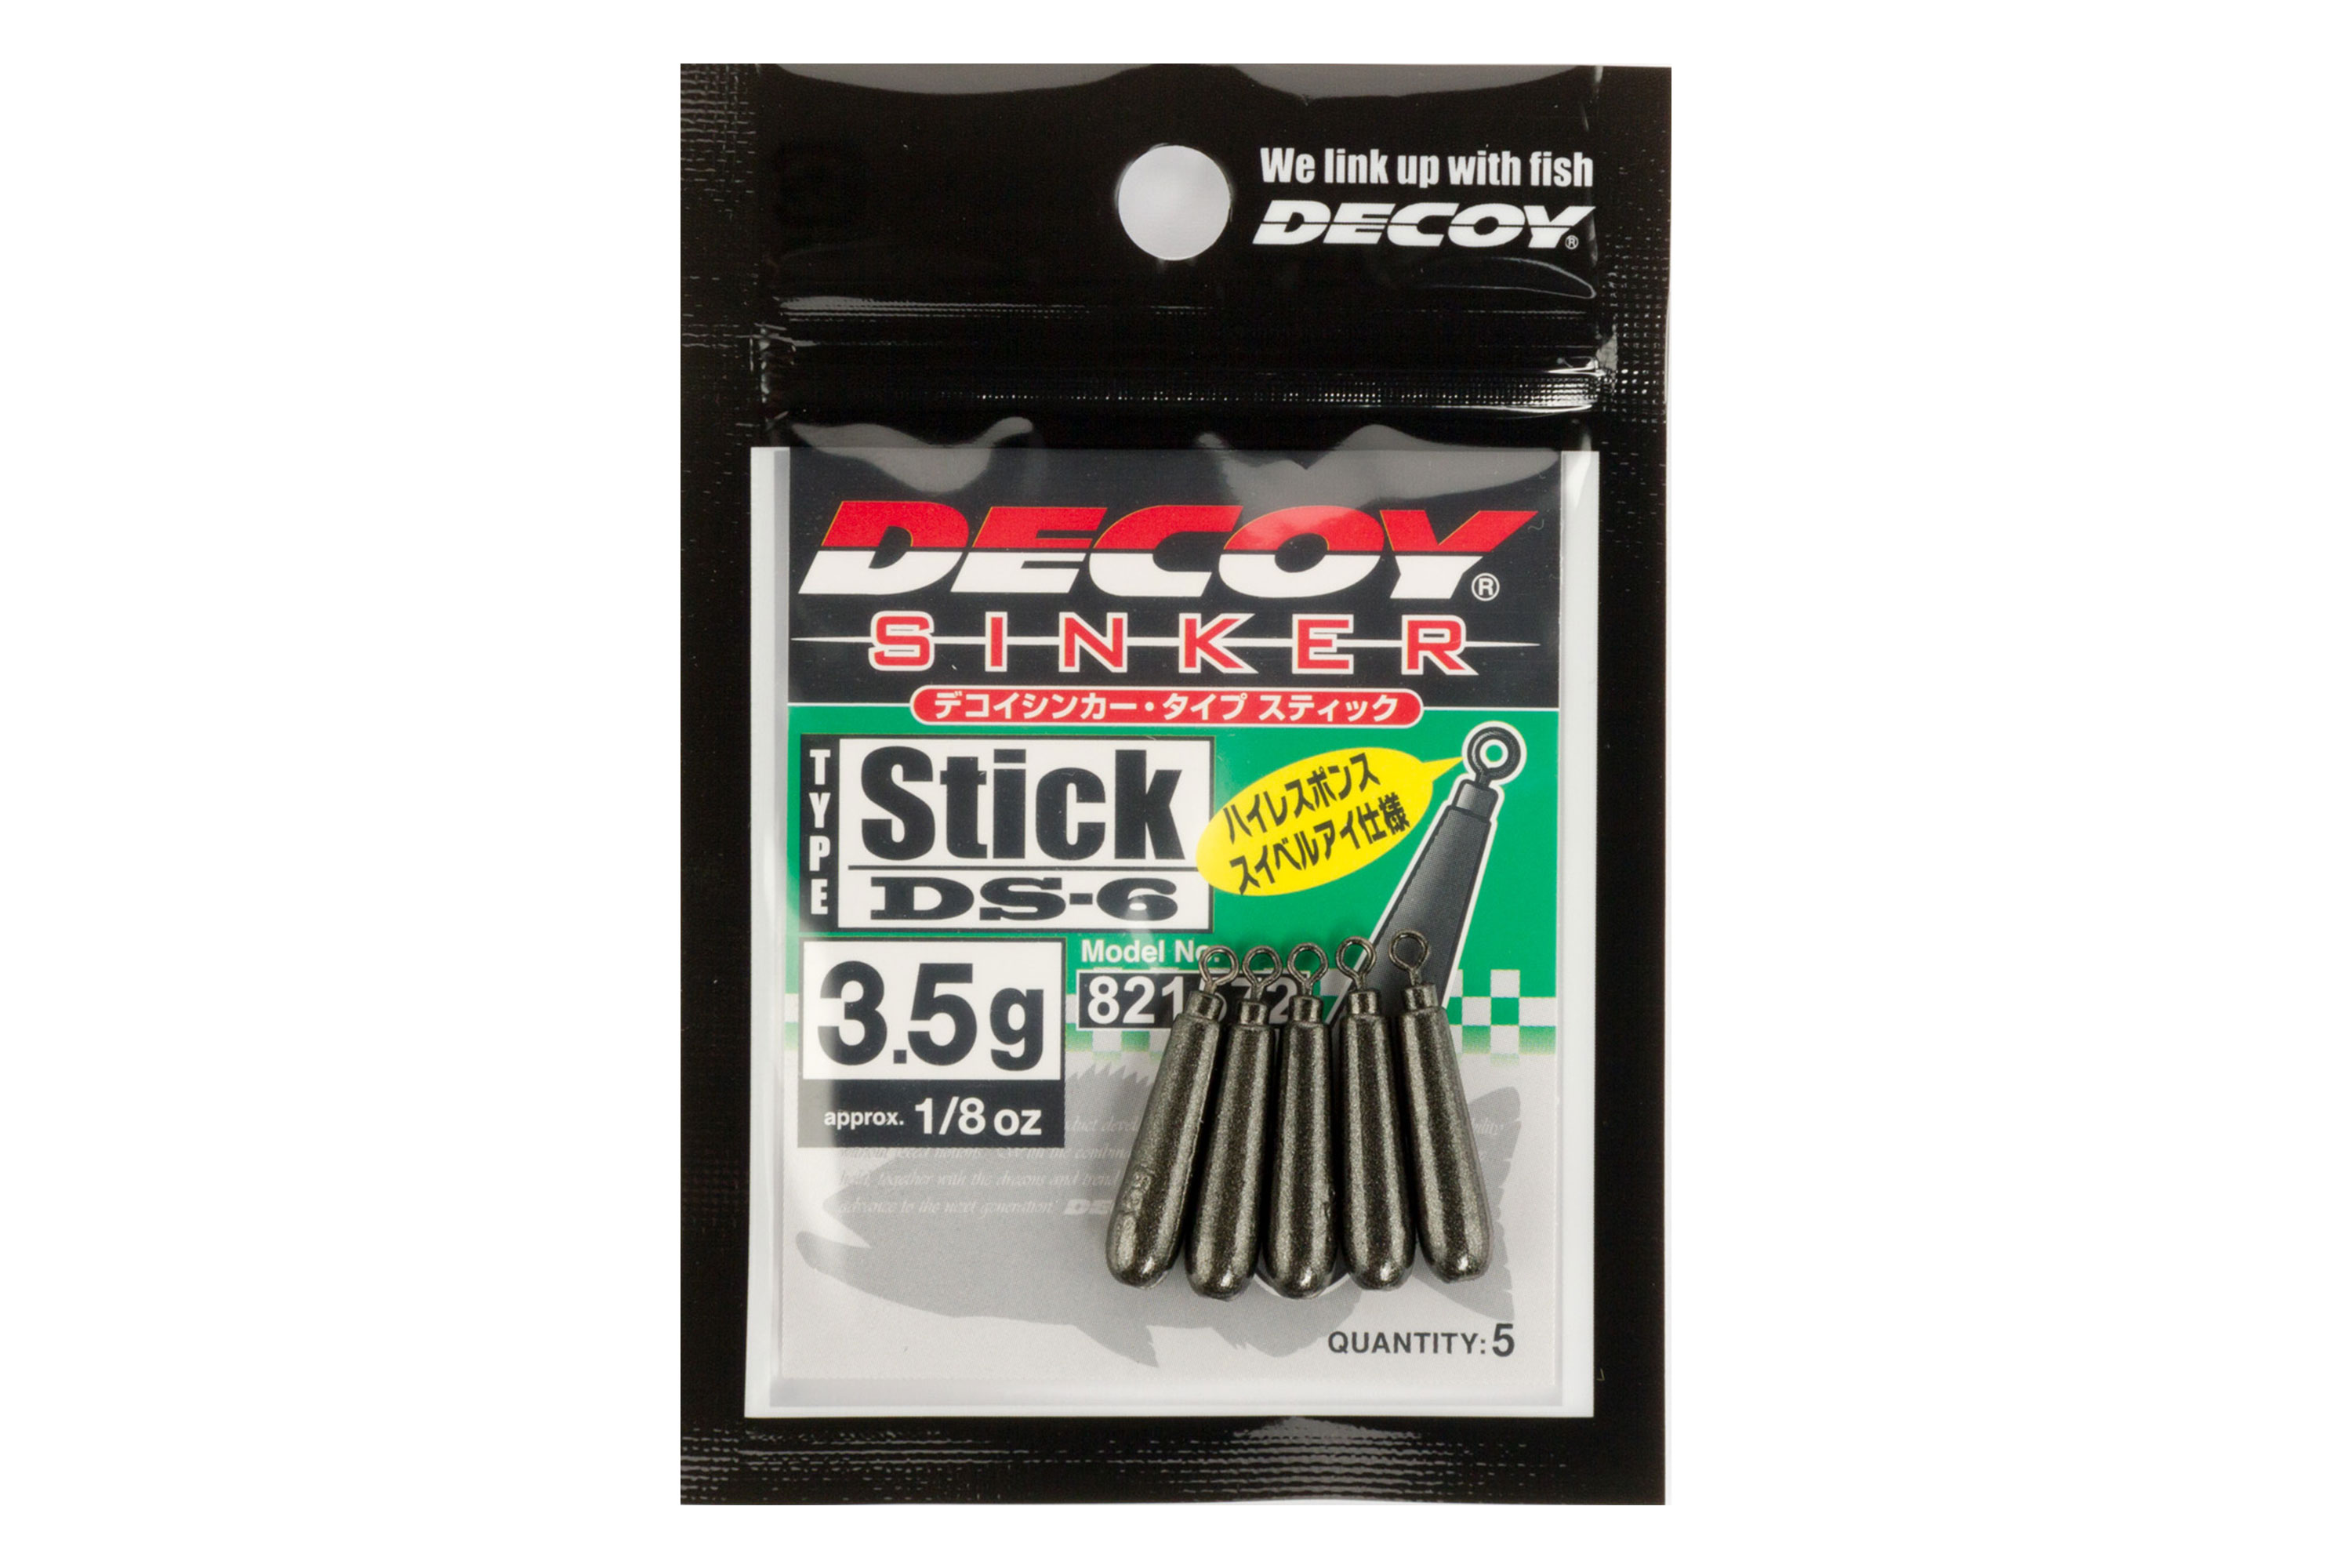 デコイシンカー タイプスティック ［DECOY Sinker type Stick DS-6］ - 株式会社カツイチ